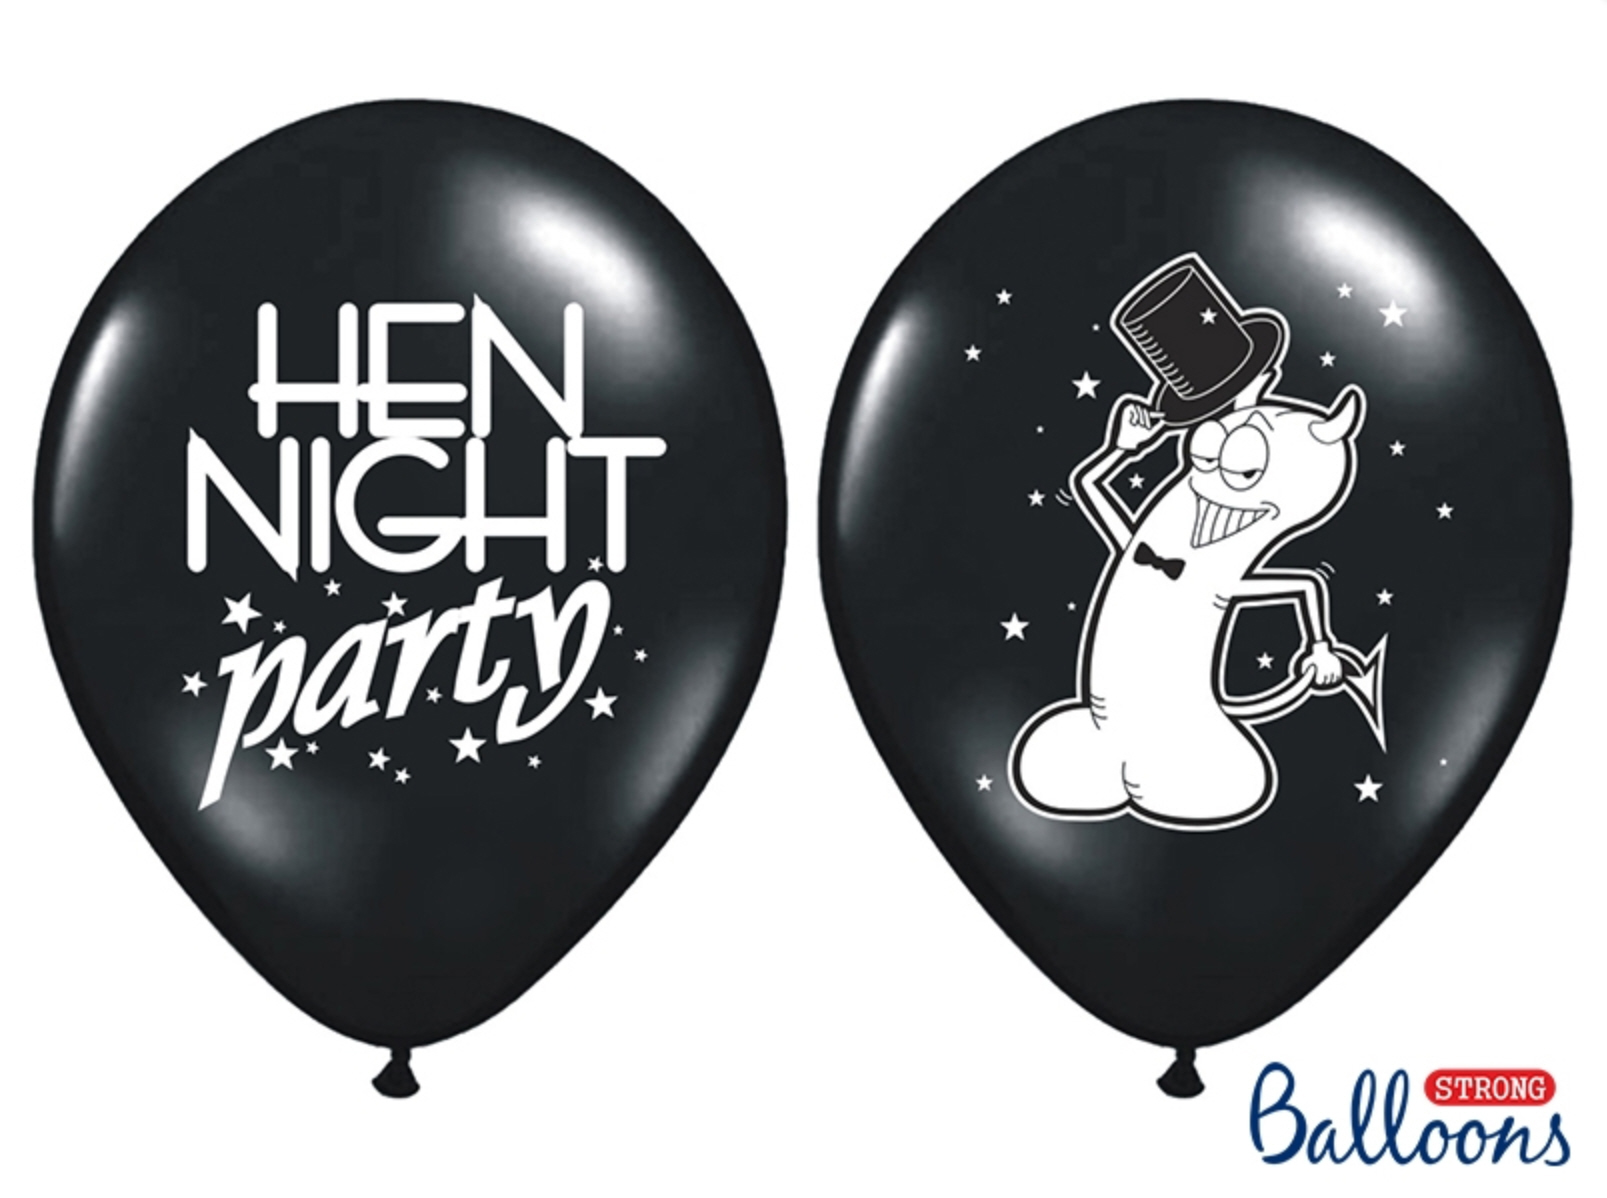 Luftballons bedruckt Hen Night Party, 5 Stück 